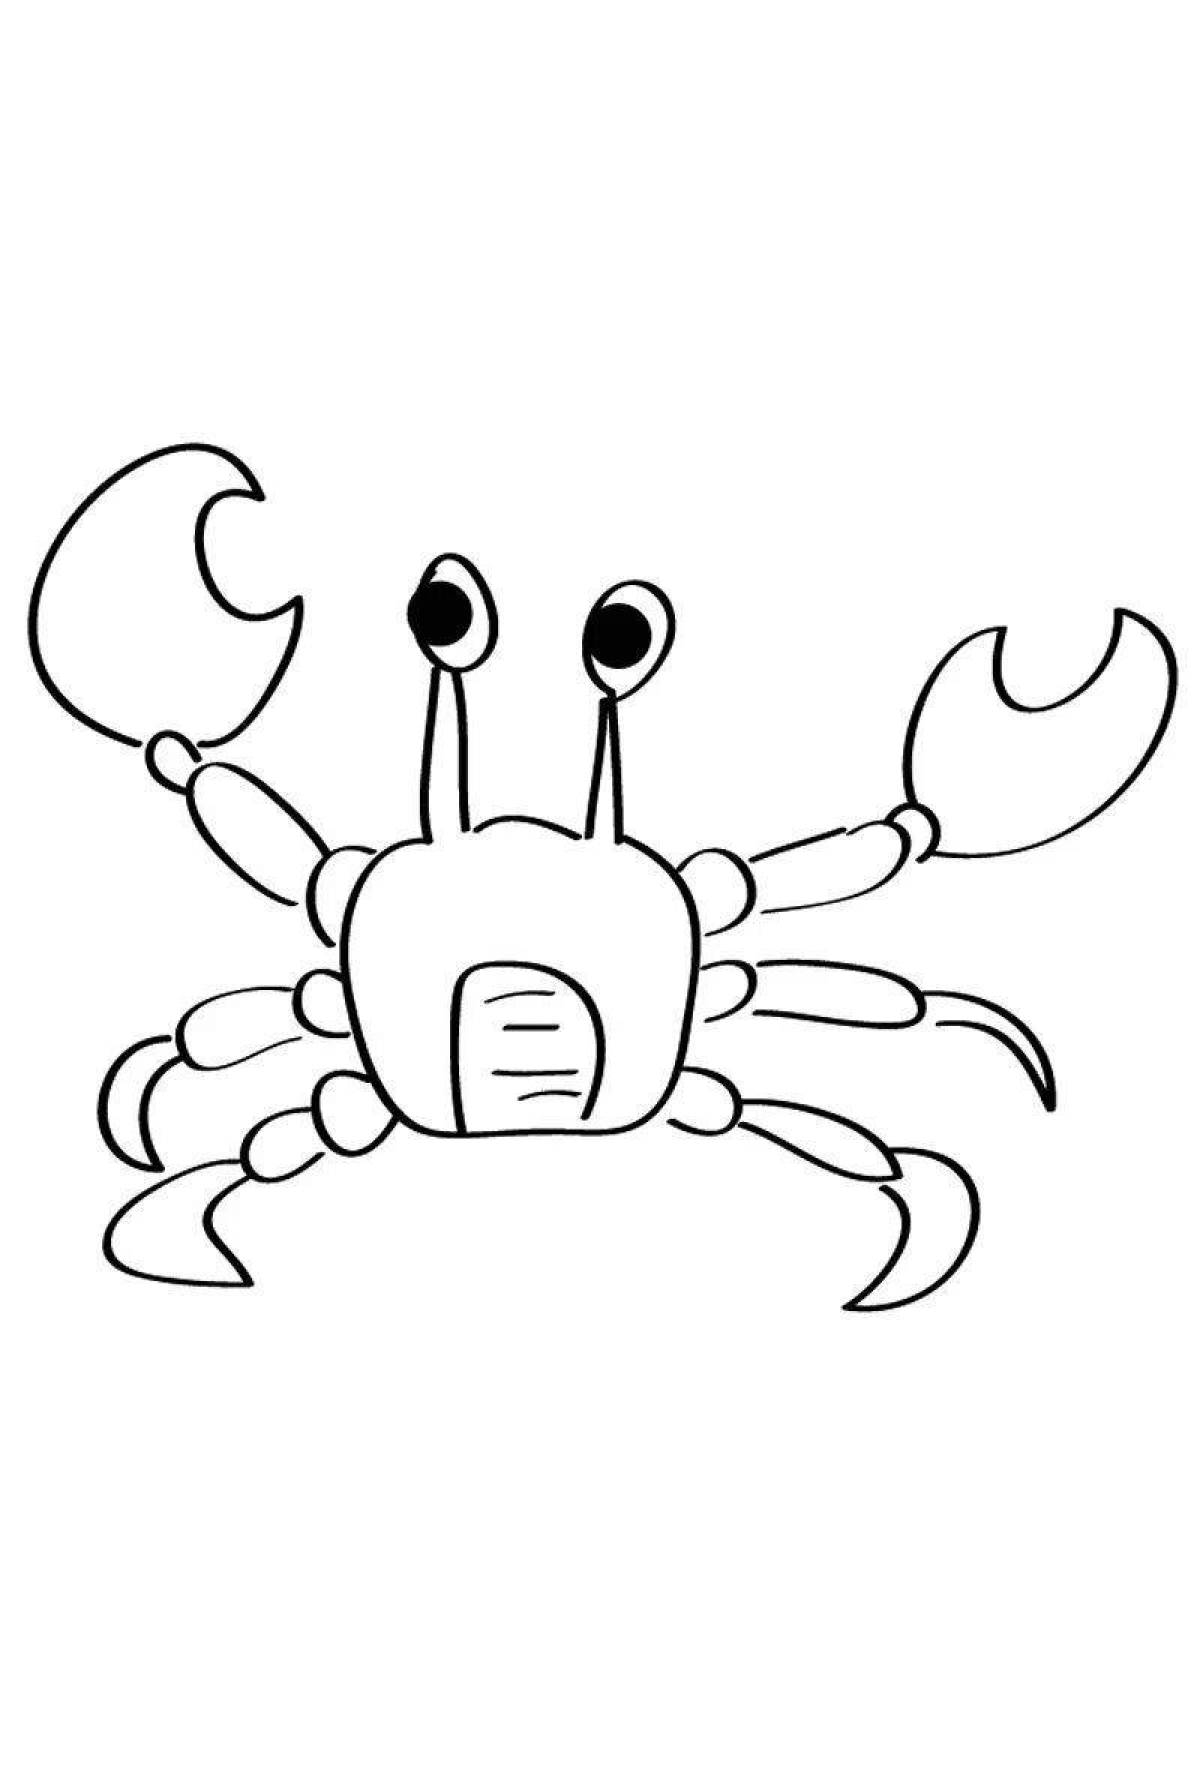 Joyful crab coloring for kids